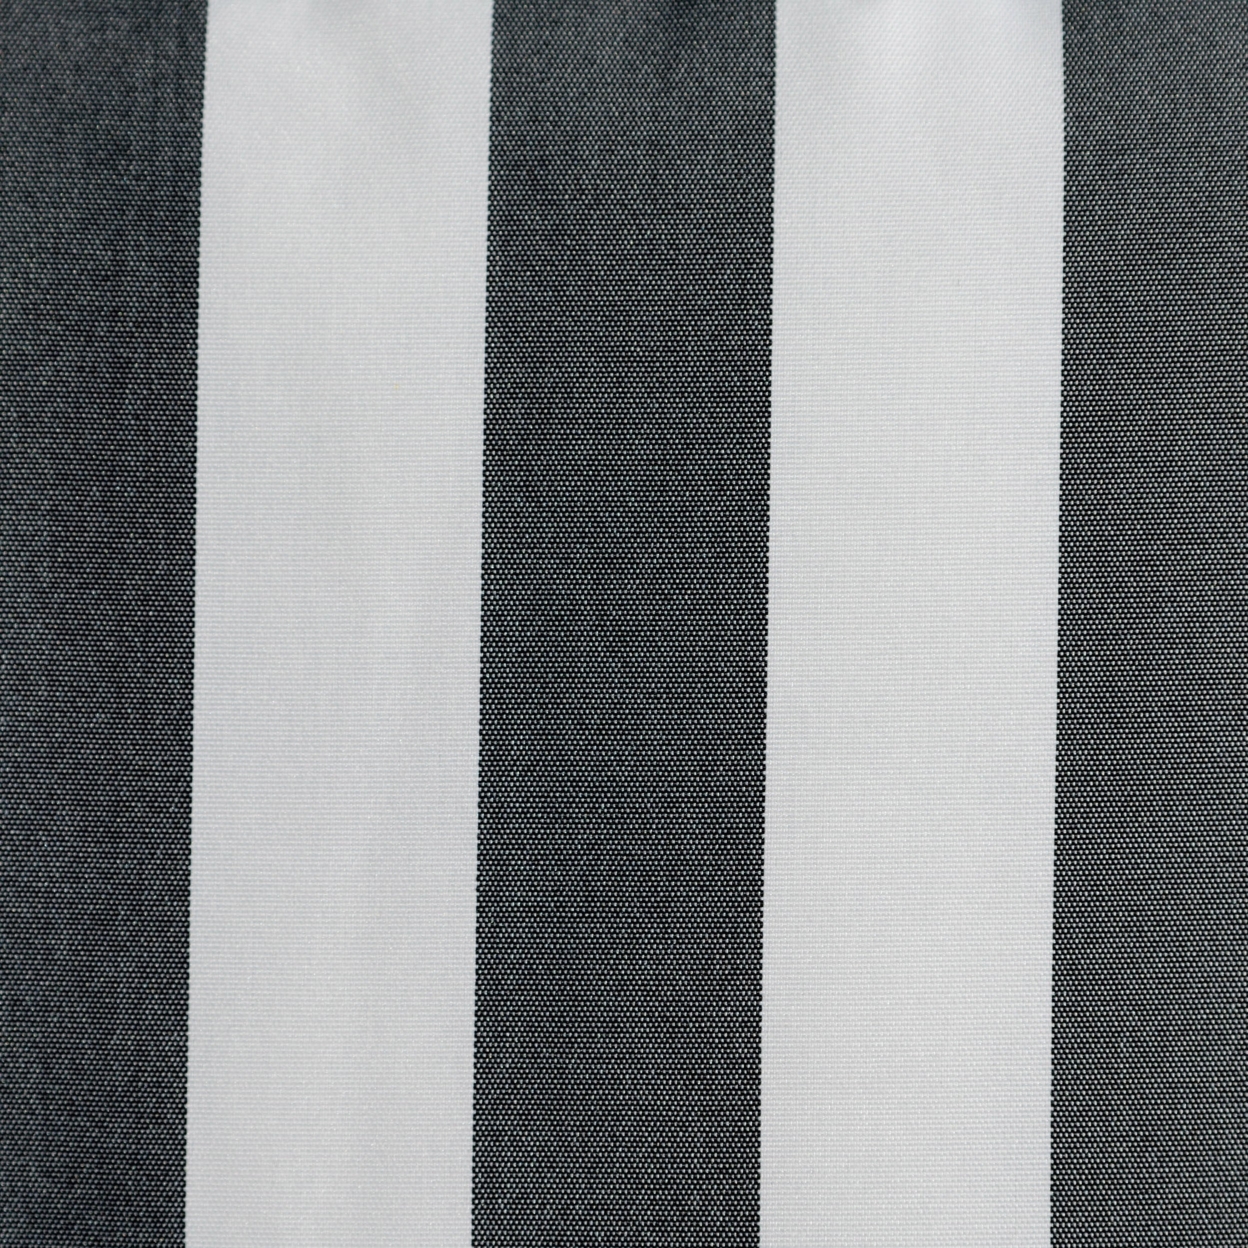 Coronado Outdoor Stripe Water Resistant Rectangular Throw Pillow - Black/white, Single